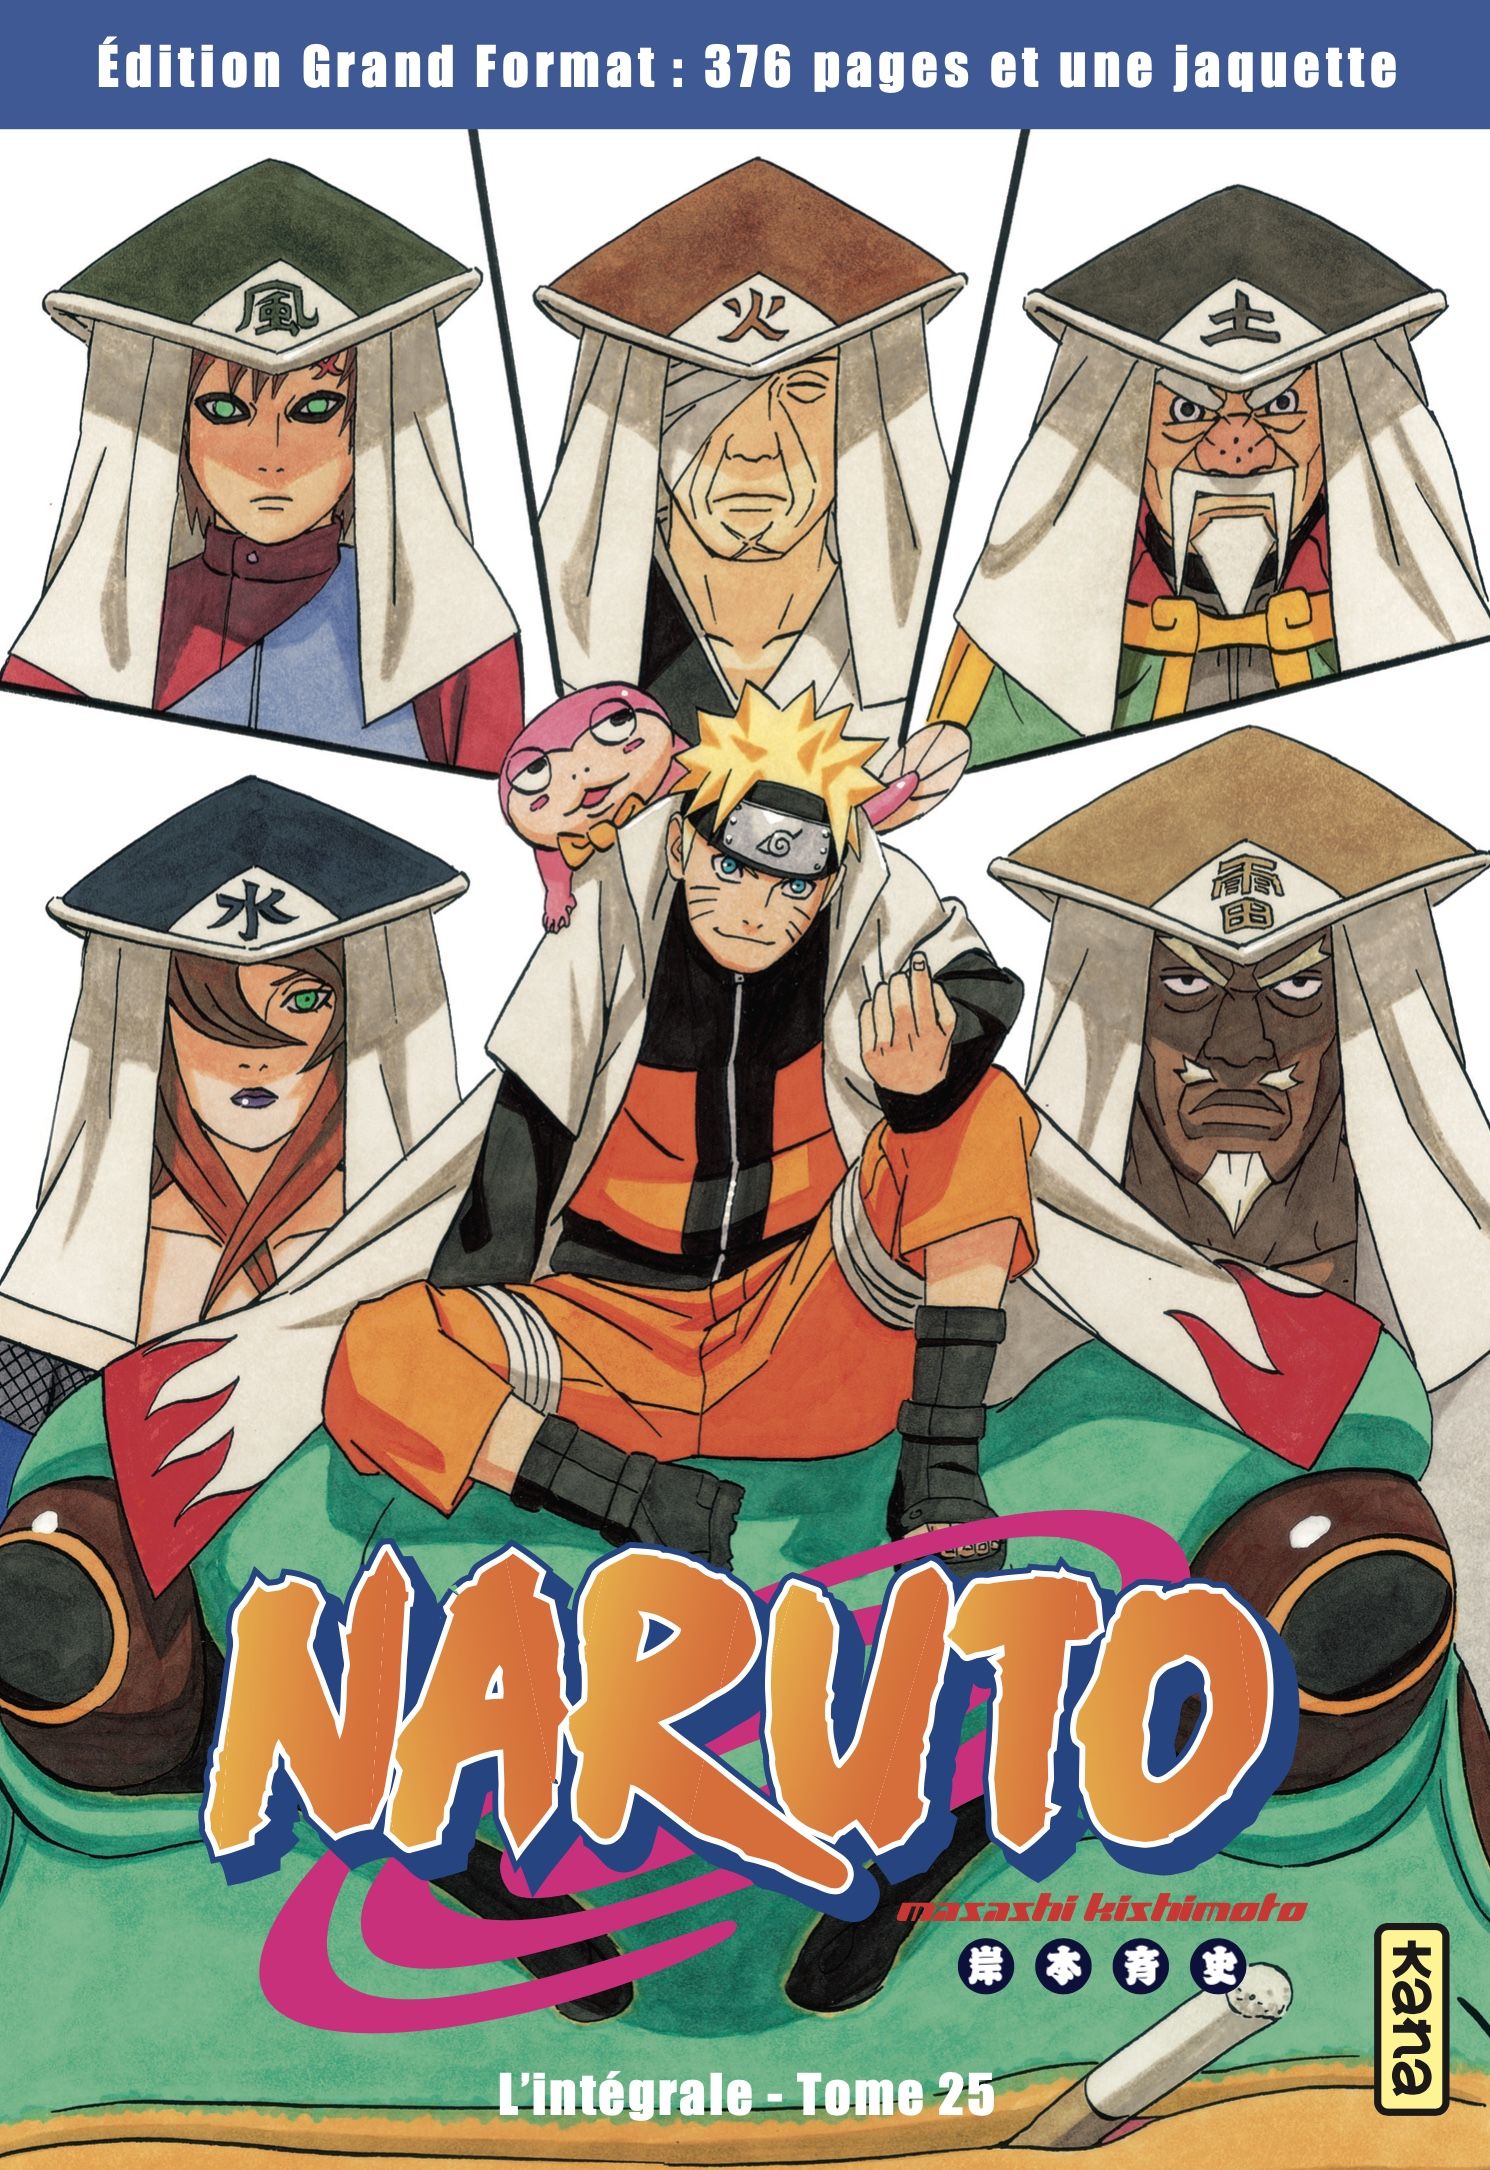 Naruto - Hachette collection Vol.25